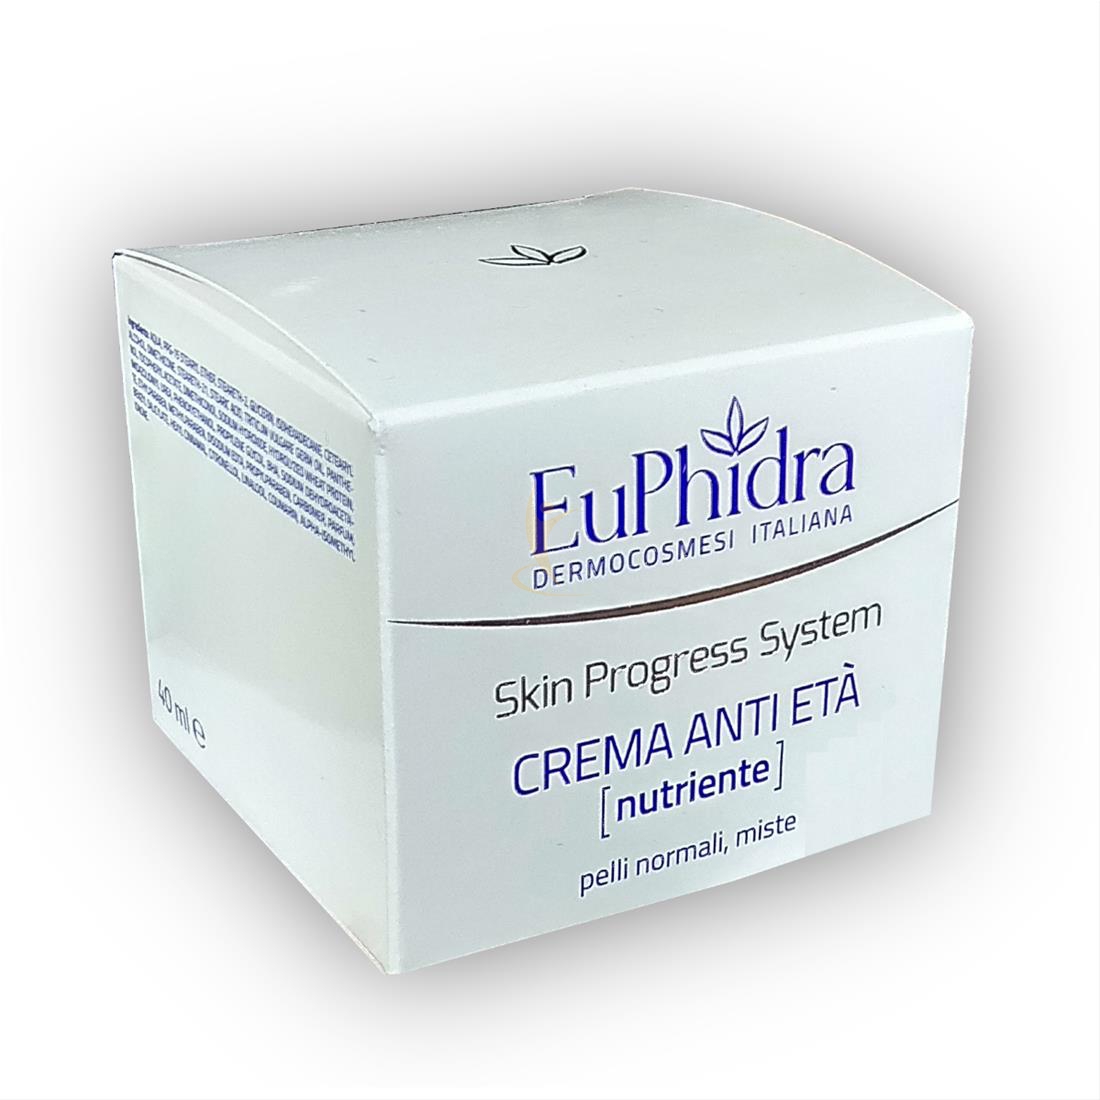 EuPhidra Linea Skin-Progress System Crema Anti-Et Nutriente Pelli Miste 40 ml